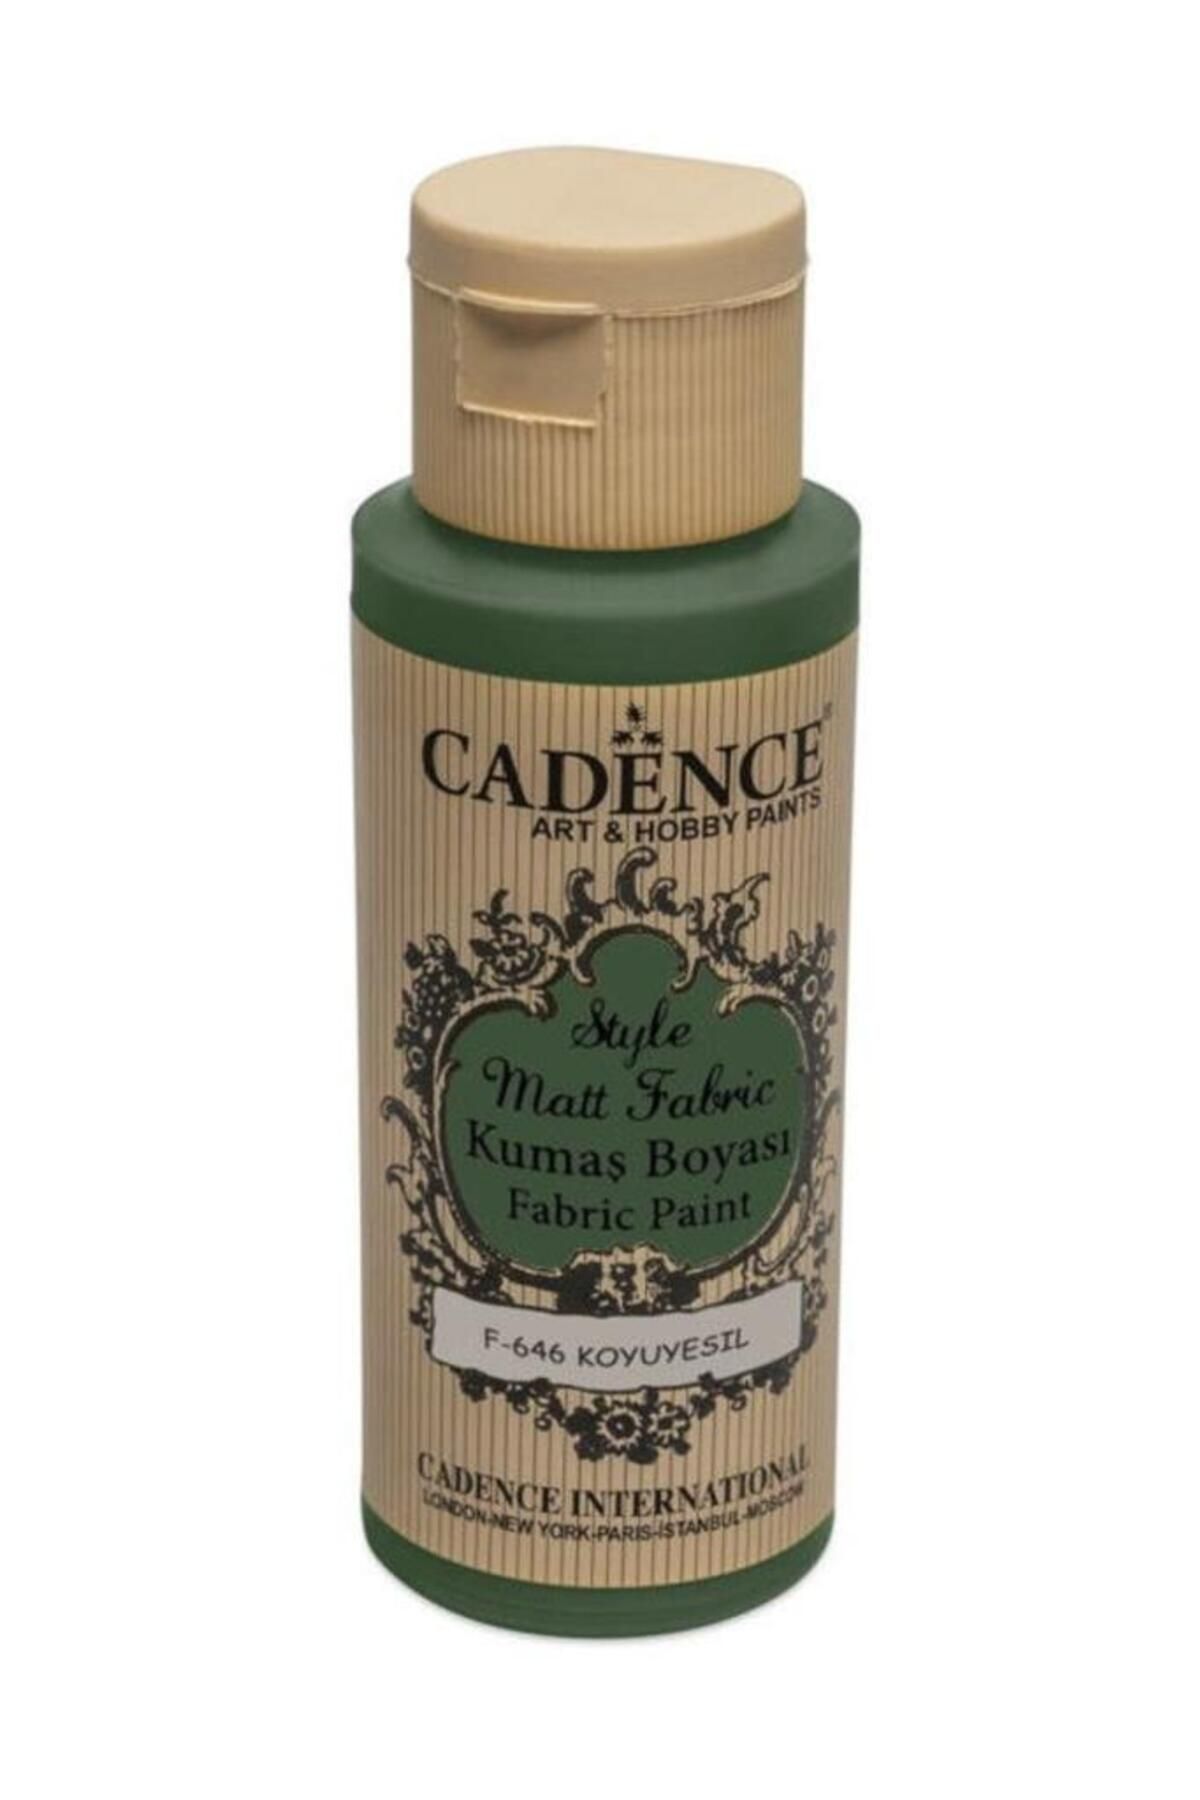 Cadence Style Mat Kumaş Boyası - 646 Koyu Yeşil 59ml